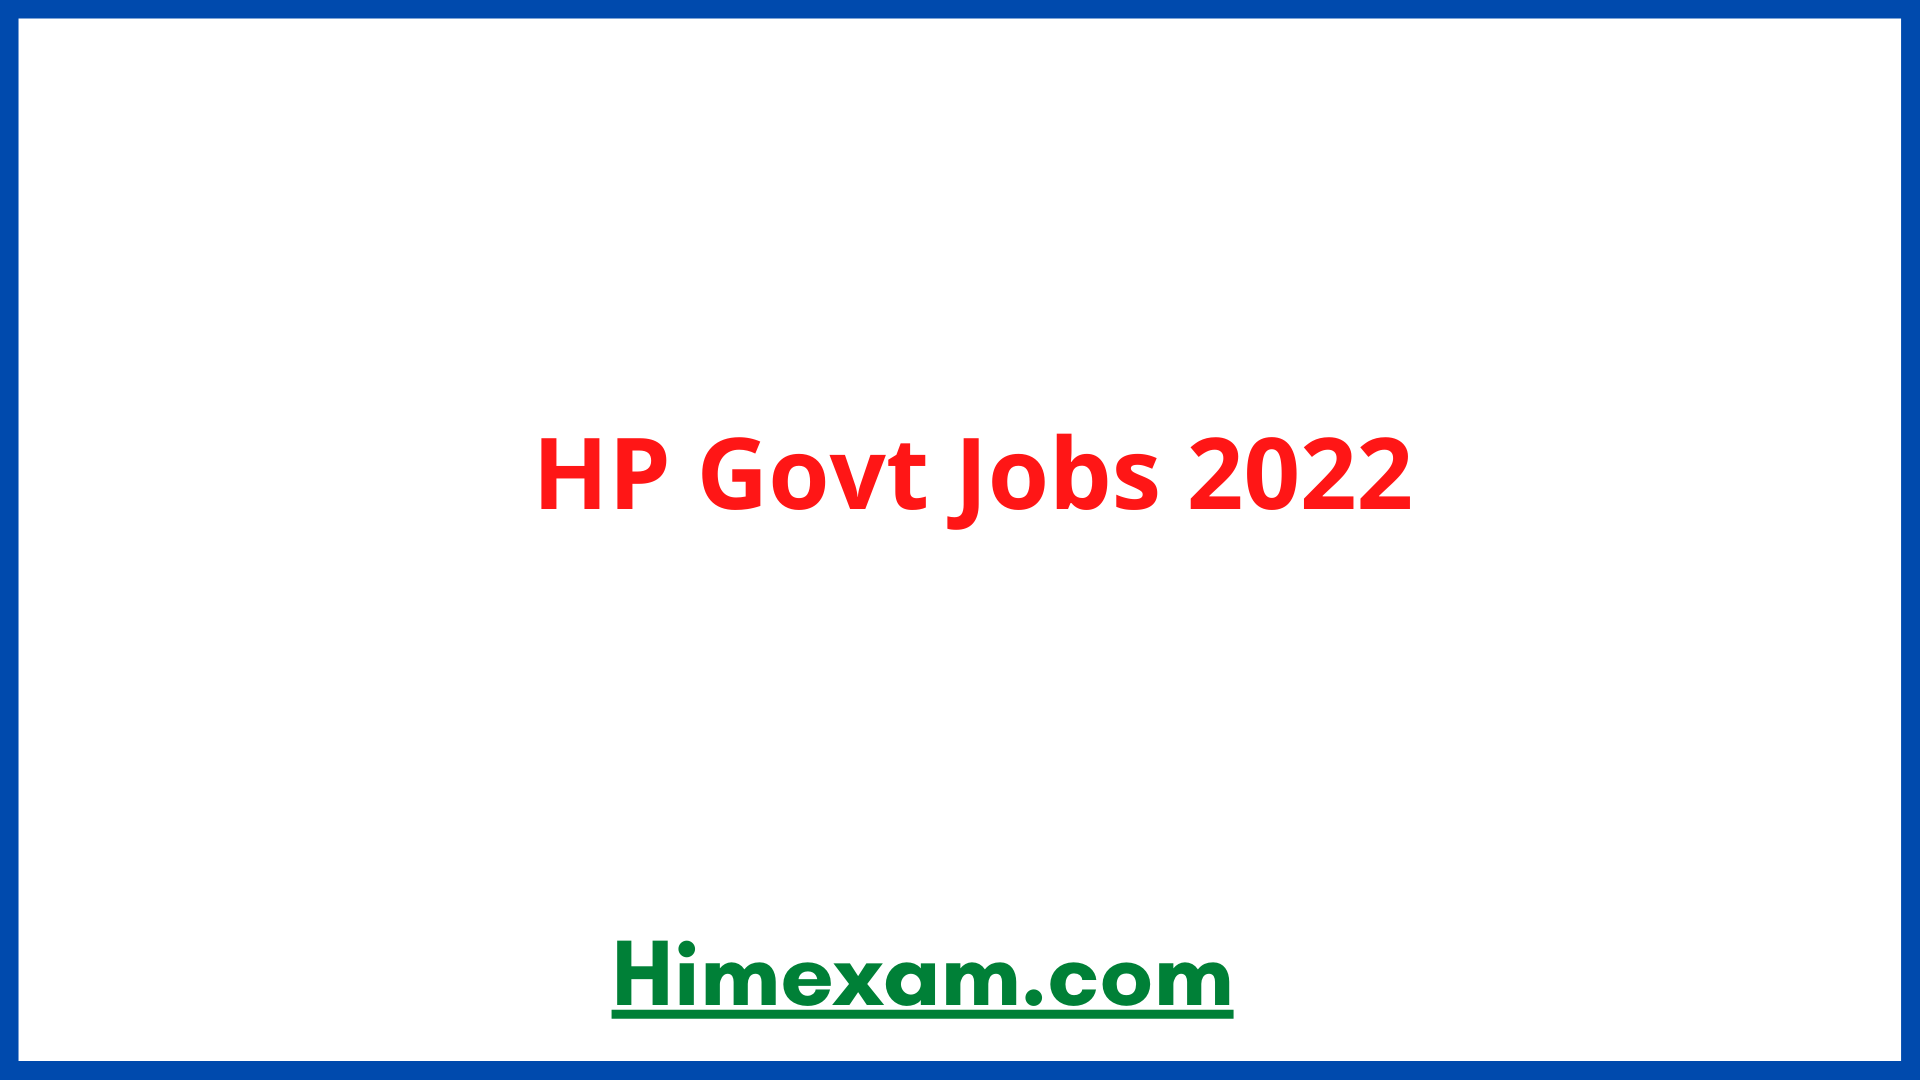 HP Govt Jobs 2022